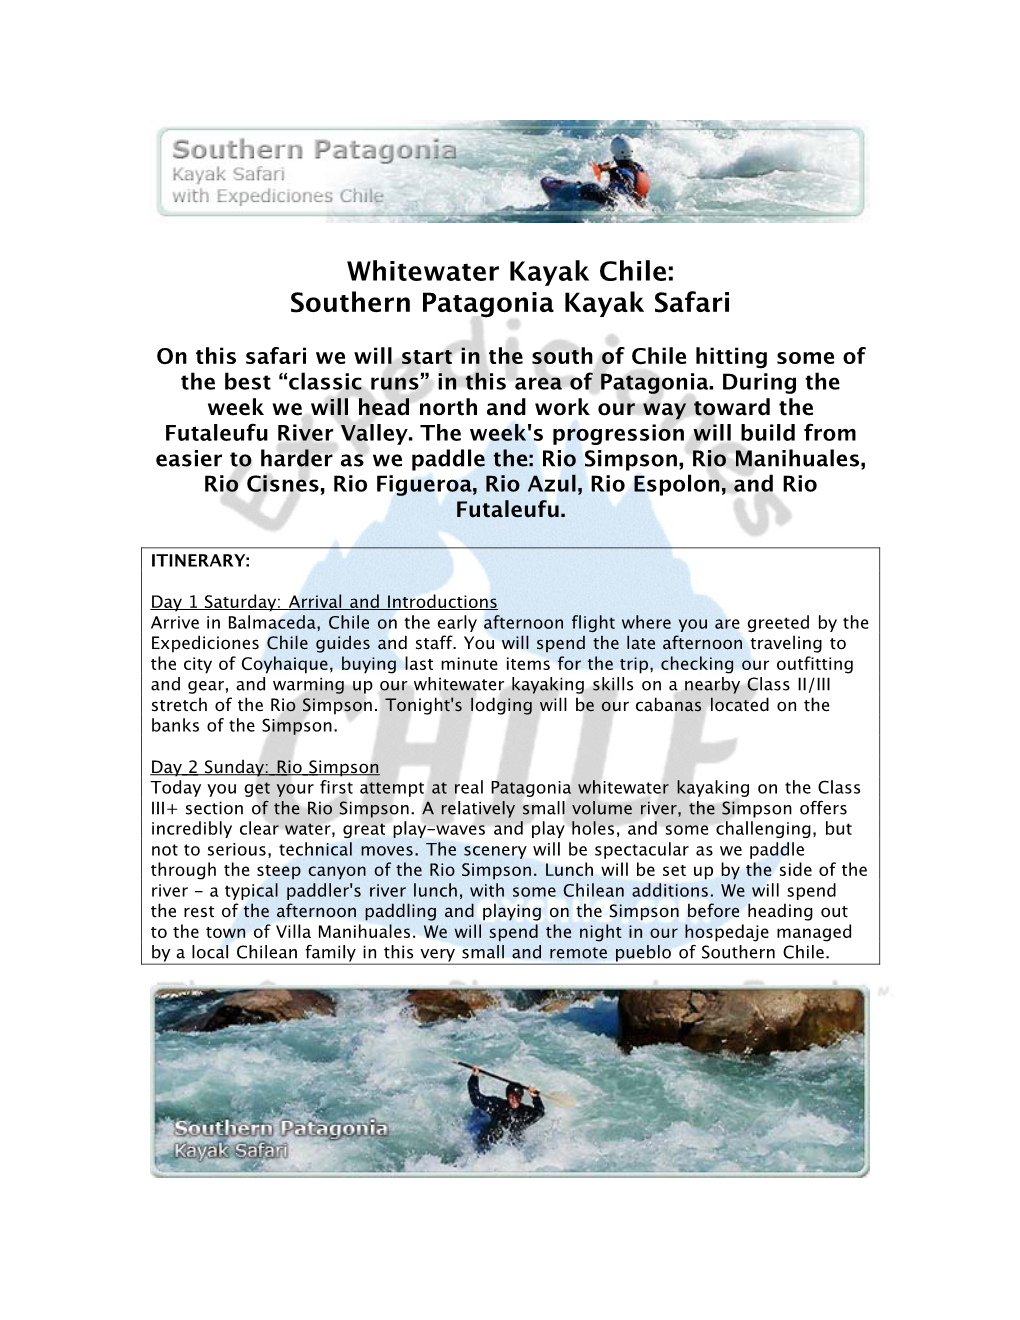 Whitewater Kayak Chile: Southern Patagonia Kayak Safari